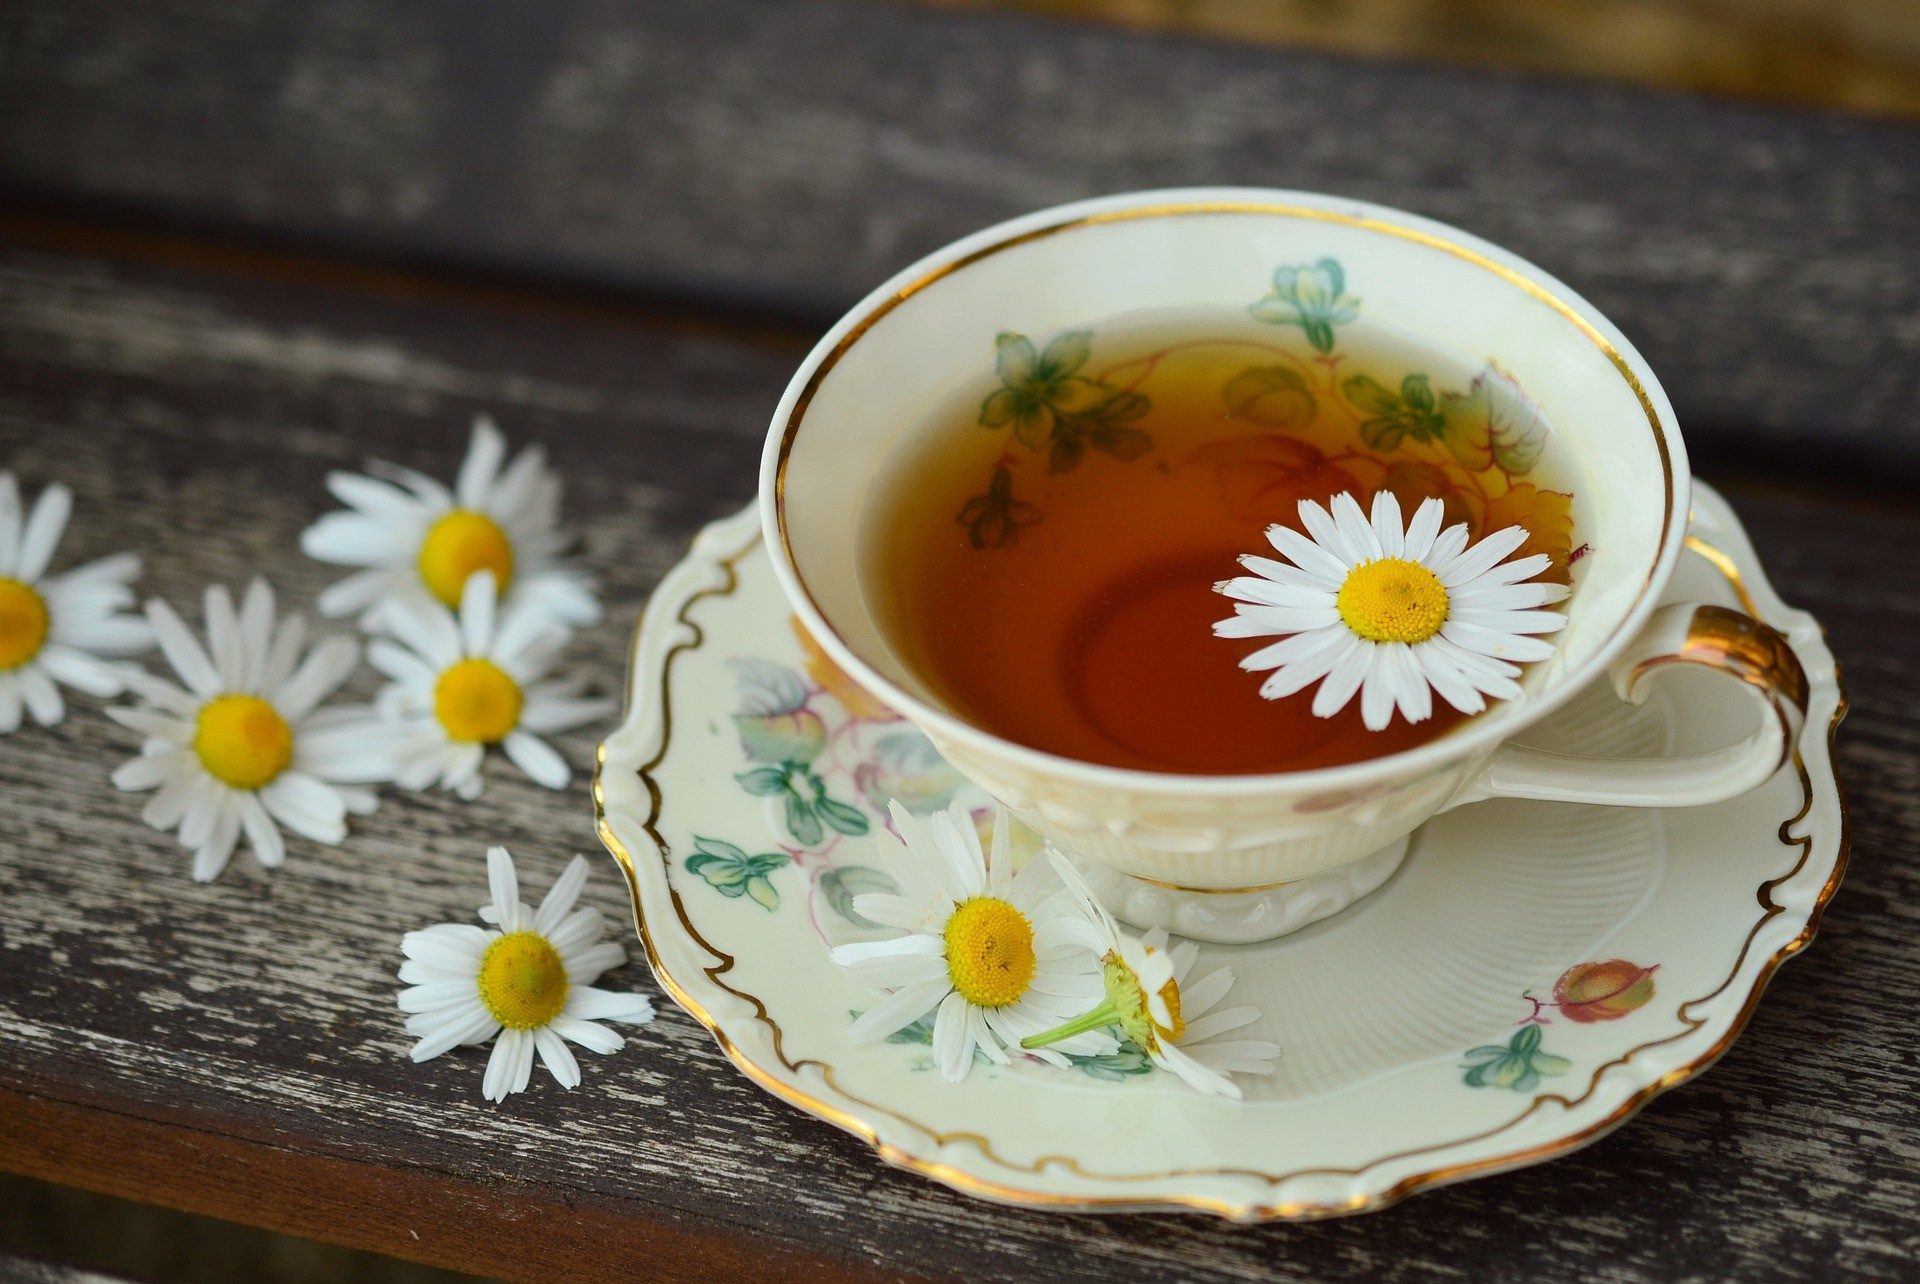 Tomar chá regularmente pode melhorar a organização do cérebro, dizem pesquisadores  (Foto: Pixabay)